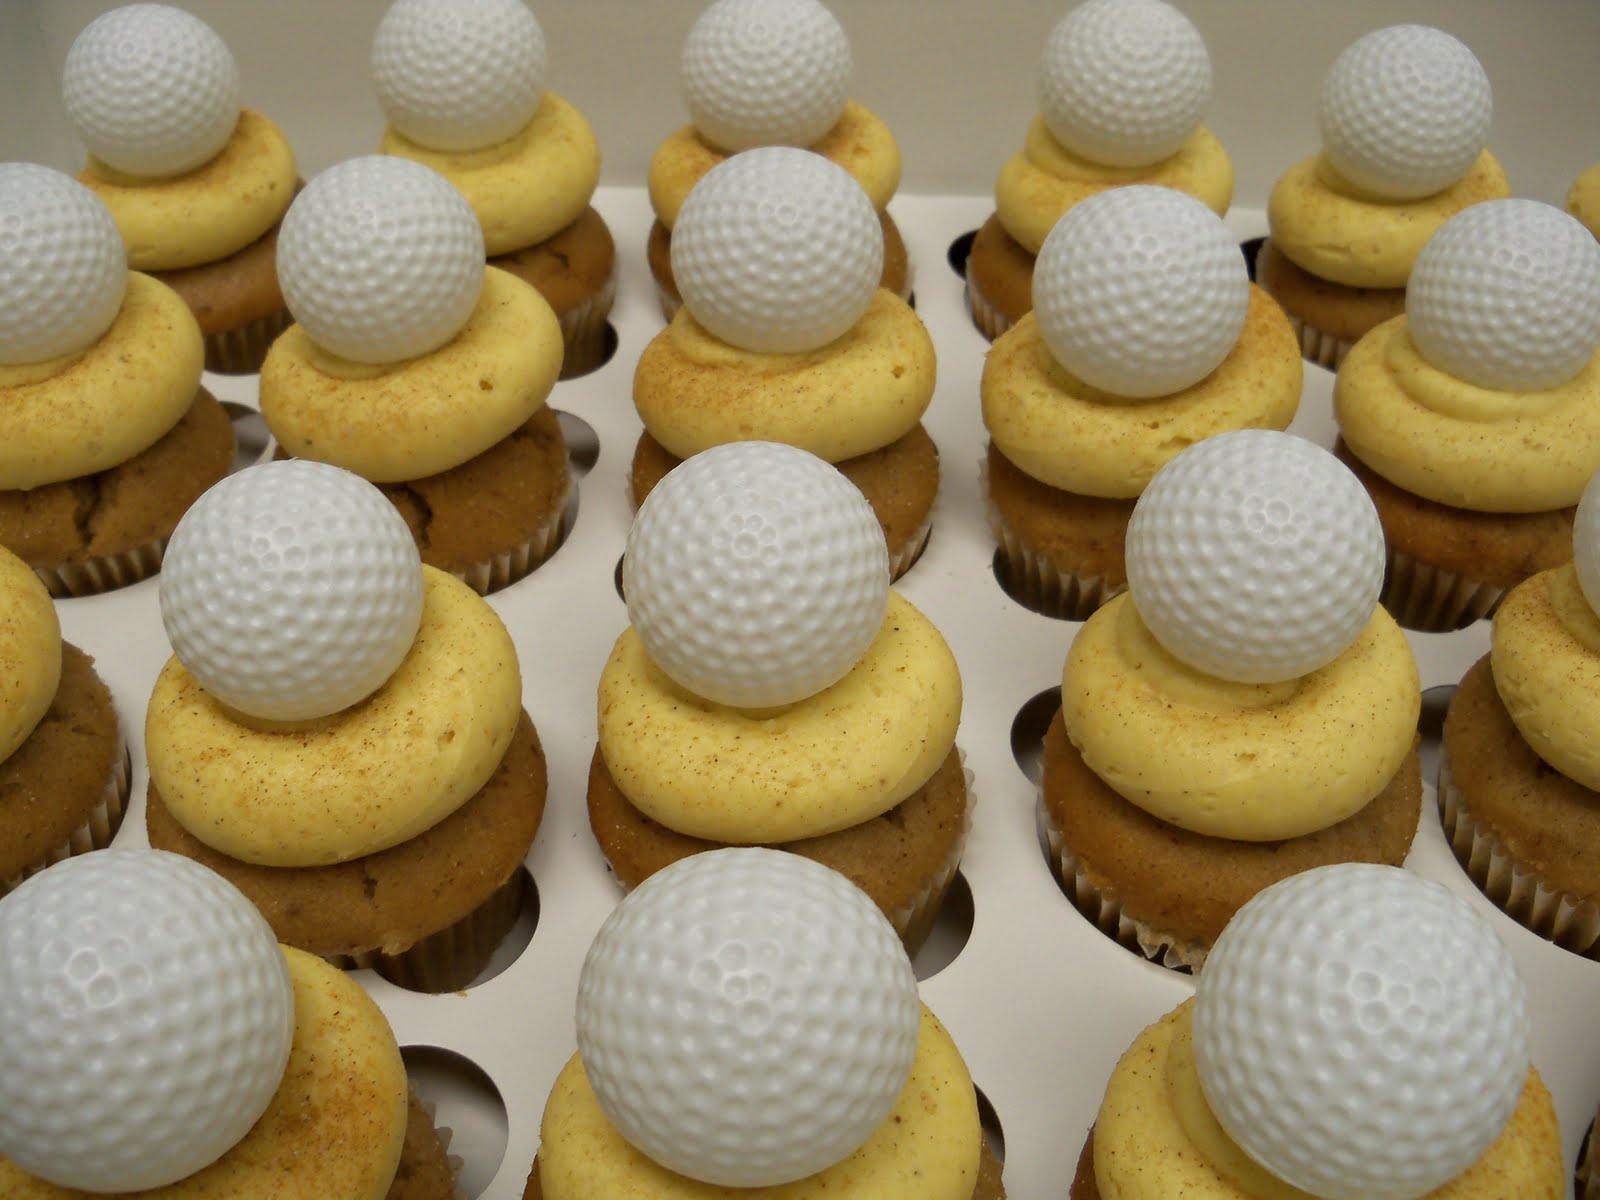 http://2.bp.blogspot.com/_PkJD_ncgzOs/TLw-FjrdblI/AAAAAAAACos/nT0CCgOB8JA/s1600/Golf+Ball+SAND+TRAP+cupcakes.JPG